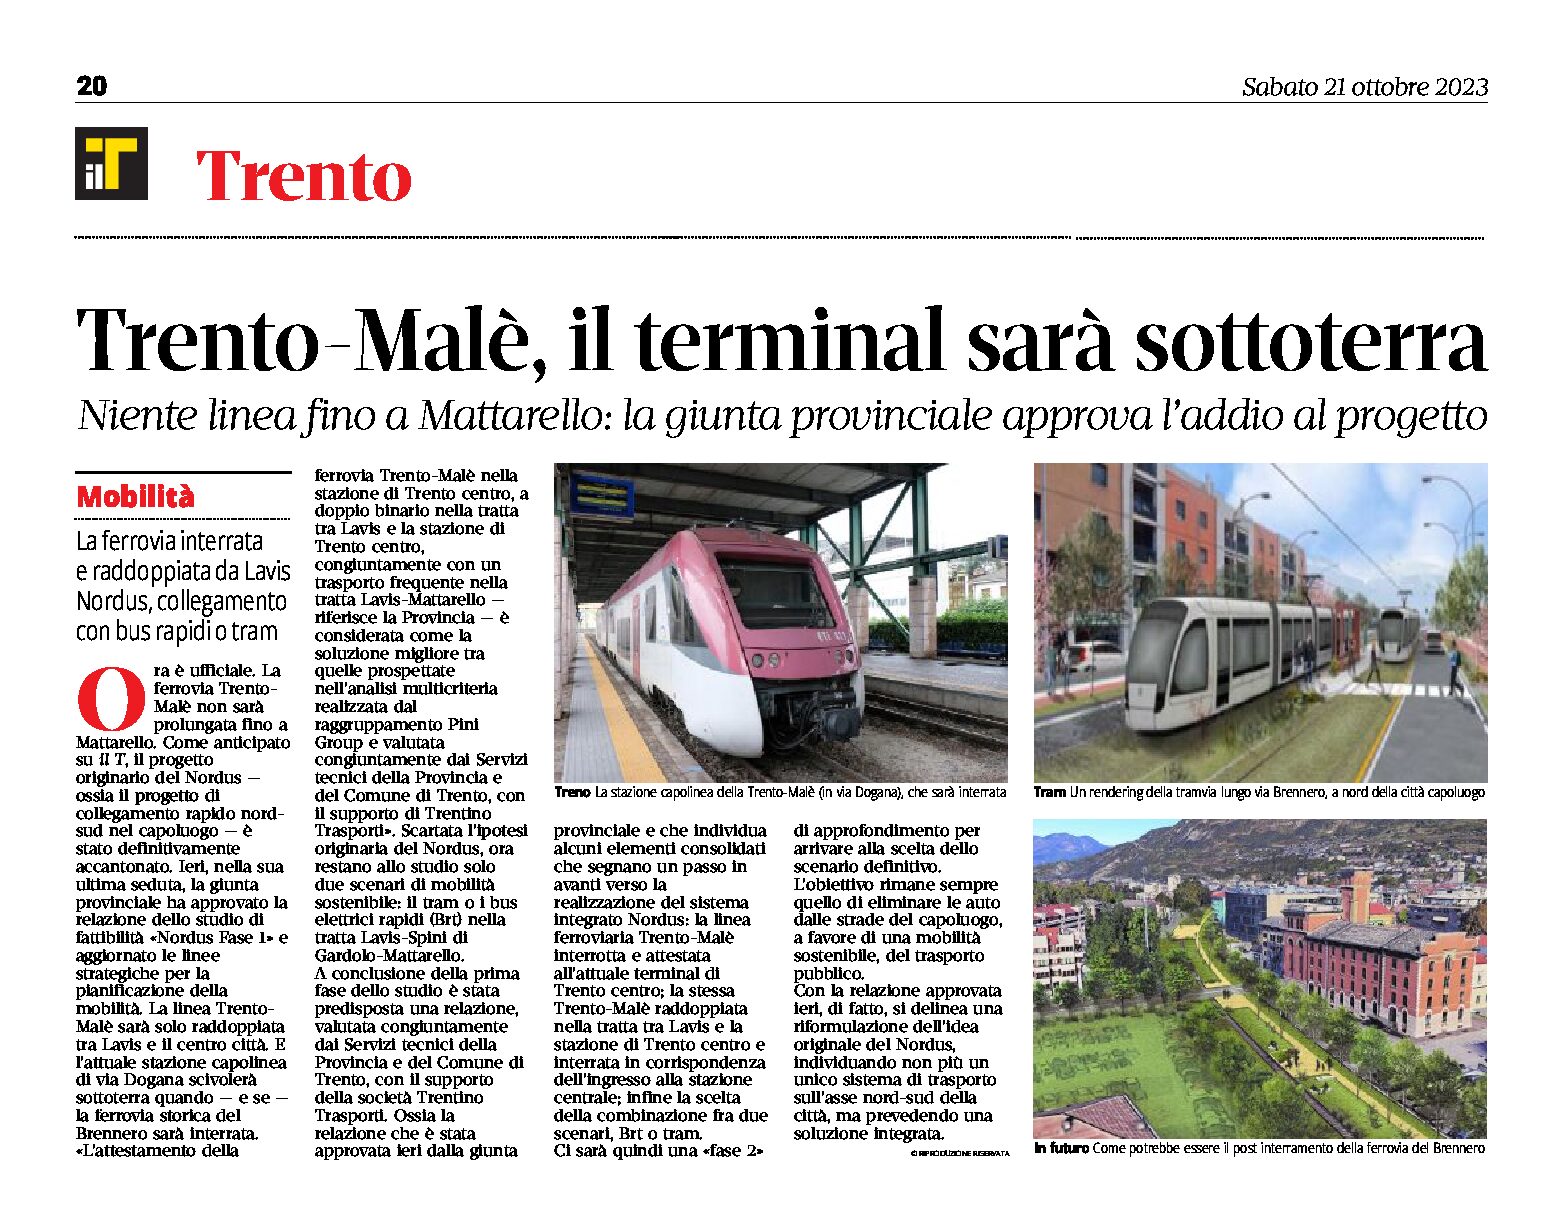 Trento-Malè: il terminal sarà sottoterra. Niente linea fino a Mattarello